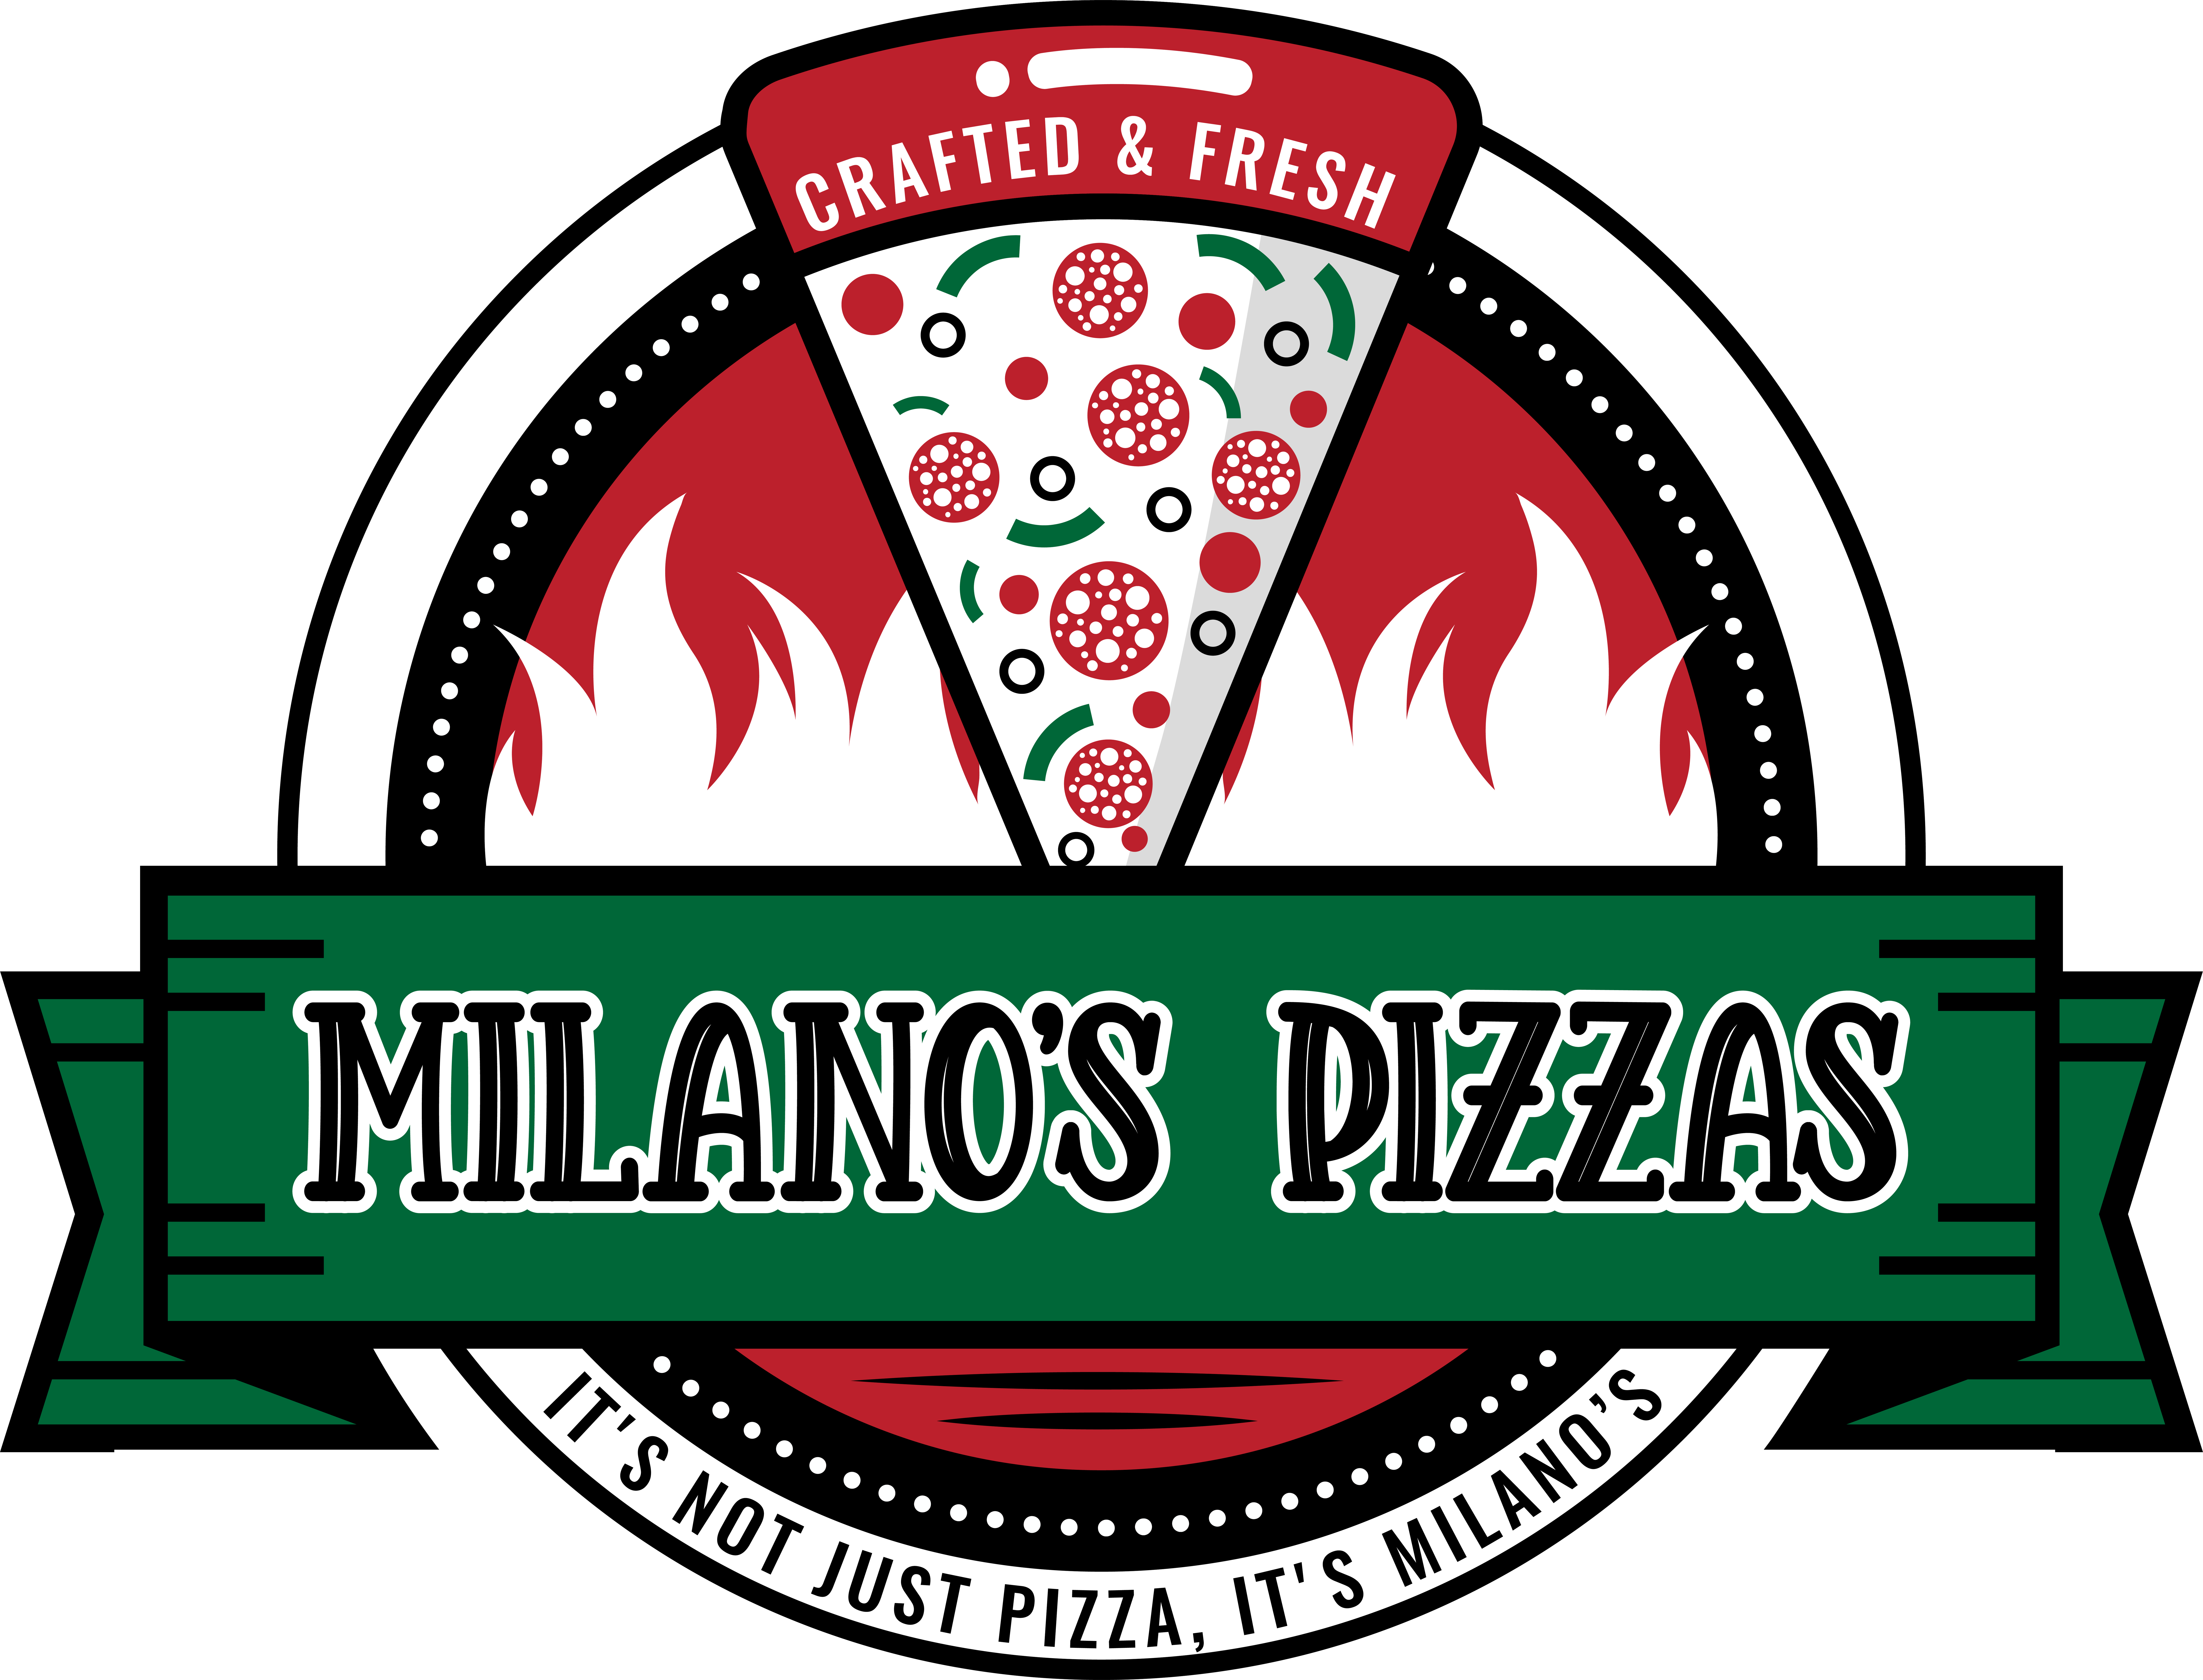 Milanos-Pizzas-logo